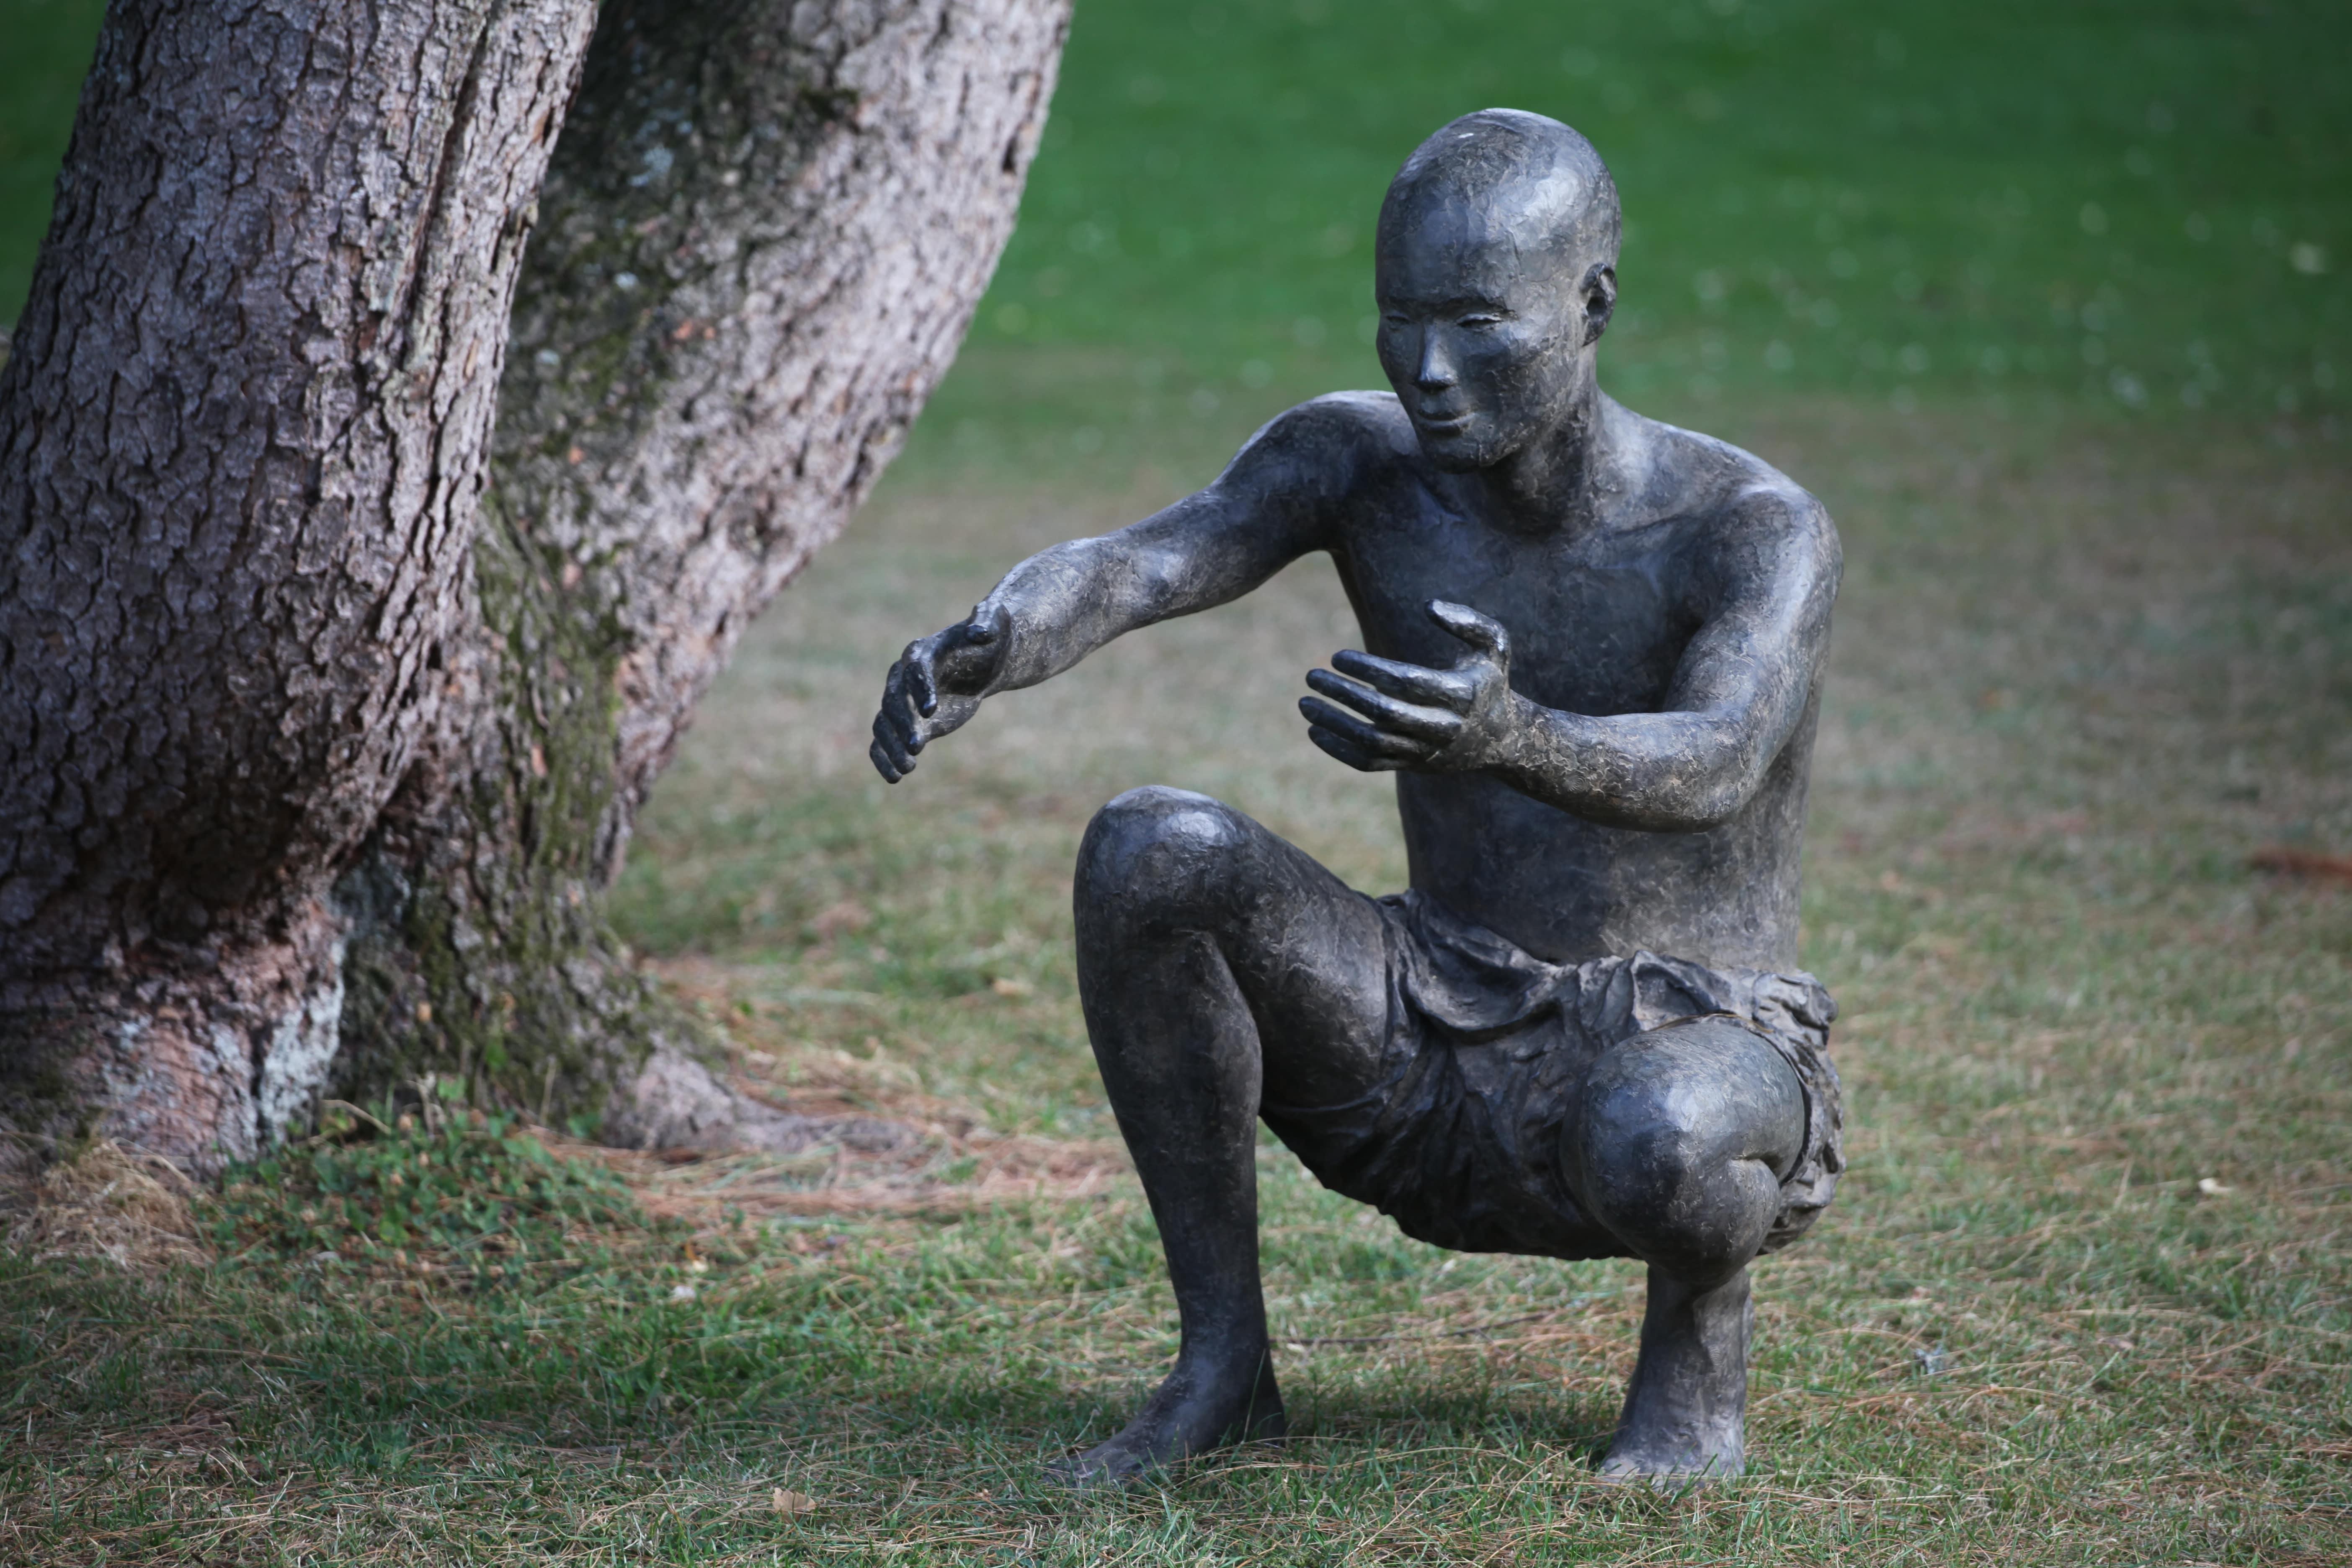 The Welcome ist eine monumentale Bronzeskulptur der französischen zeitgenössischen Künstlerin Marine de Soos mit den Maßen 110 × 53 × 93 cm (43,3 × 20,9 × 36,6 in). 
Die Skulptur ist signiert und nummeriert, gehört zu einer limitierten Auflage von 8